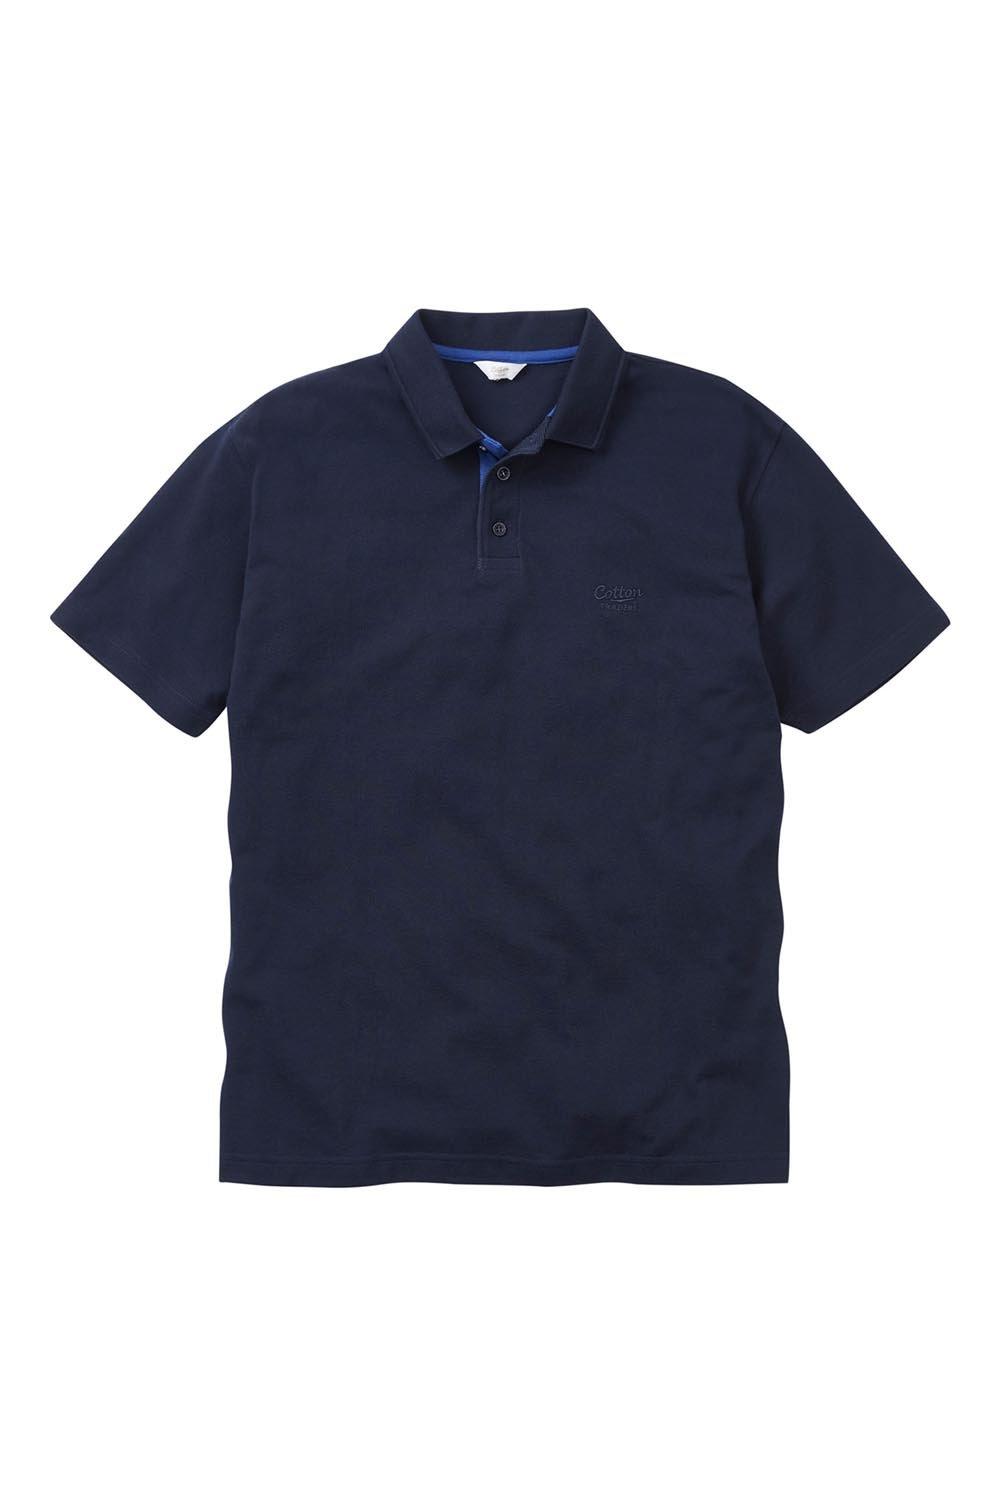 Рубашка поло с коротким рукавом Cotton Traders, синий